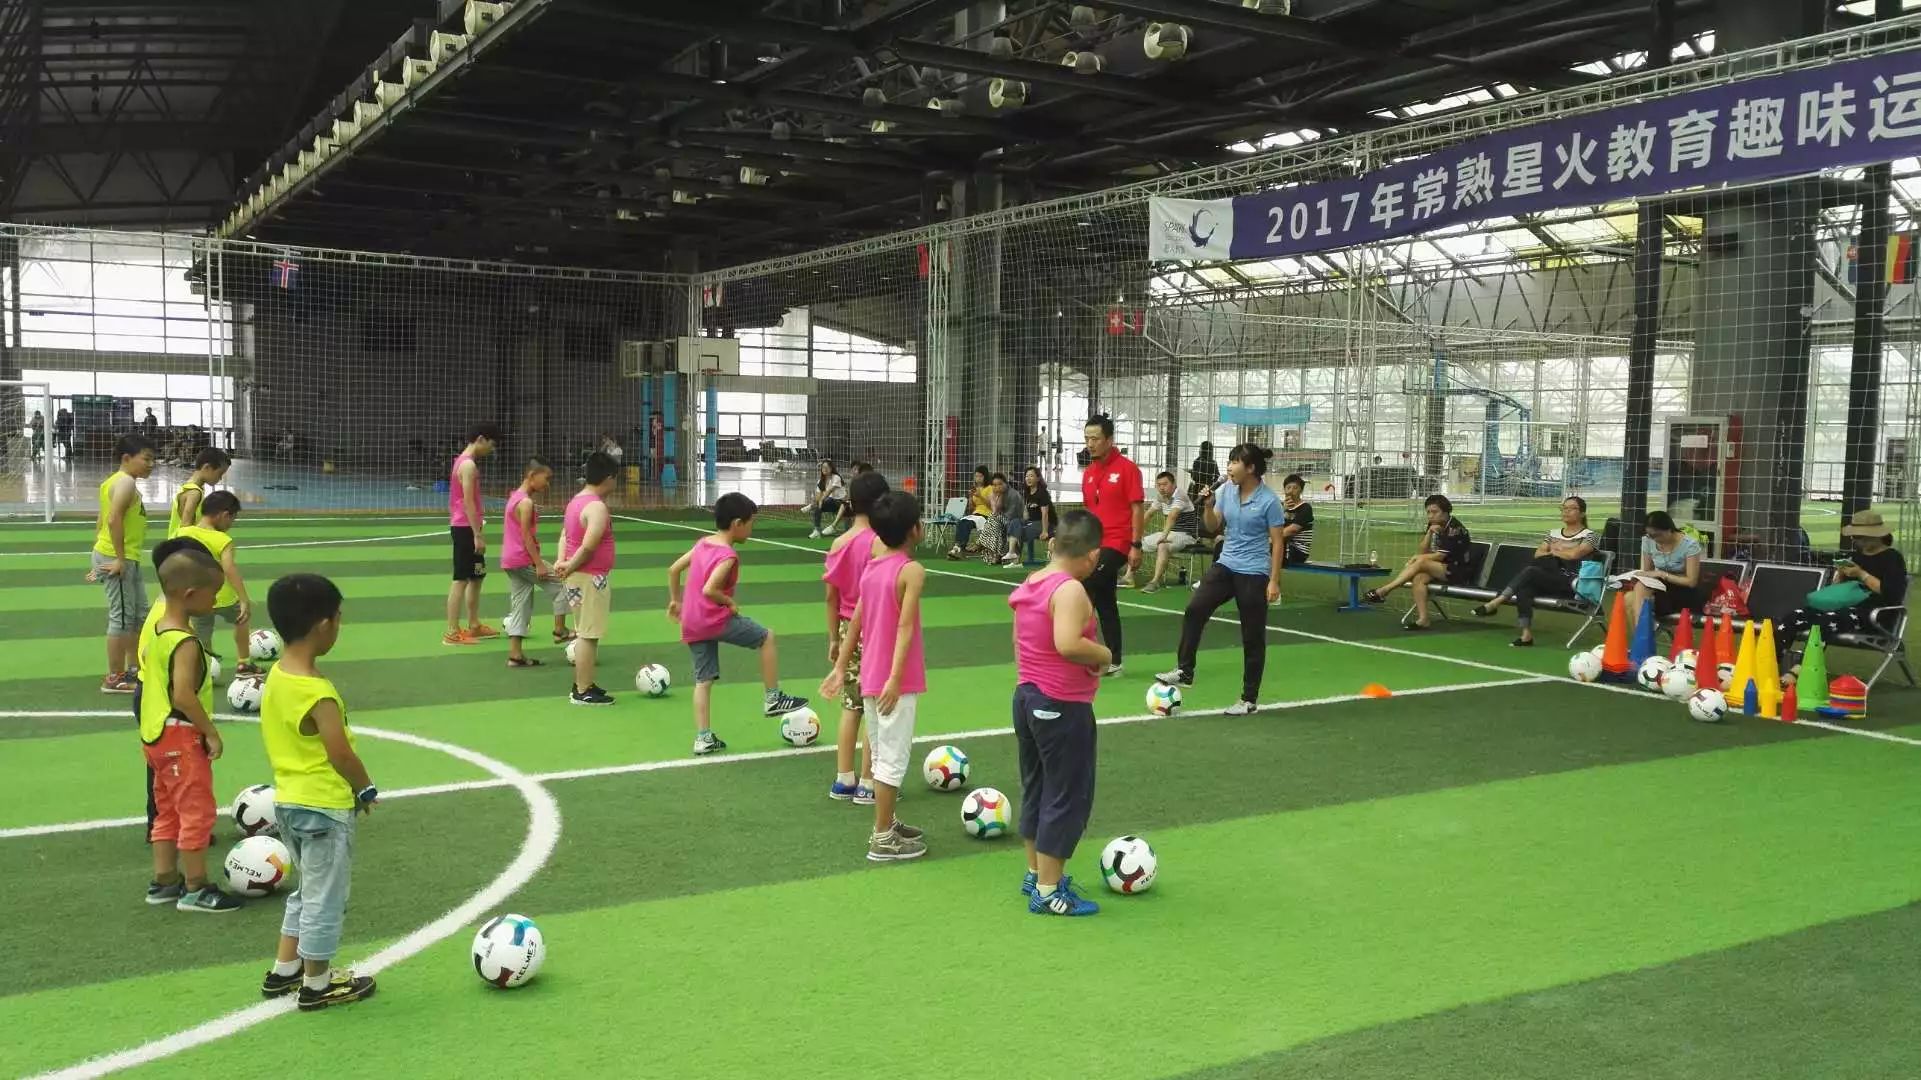 【中国青年报】 中国青少年体育培训市场的机